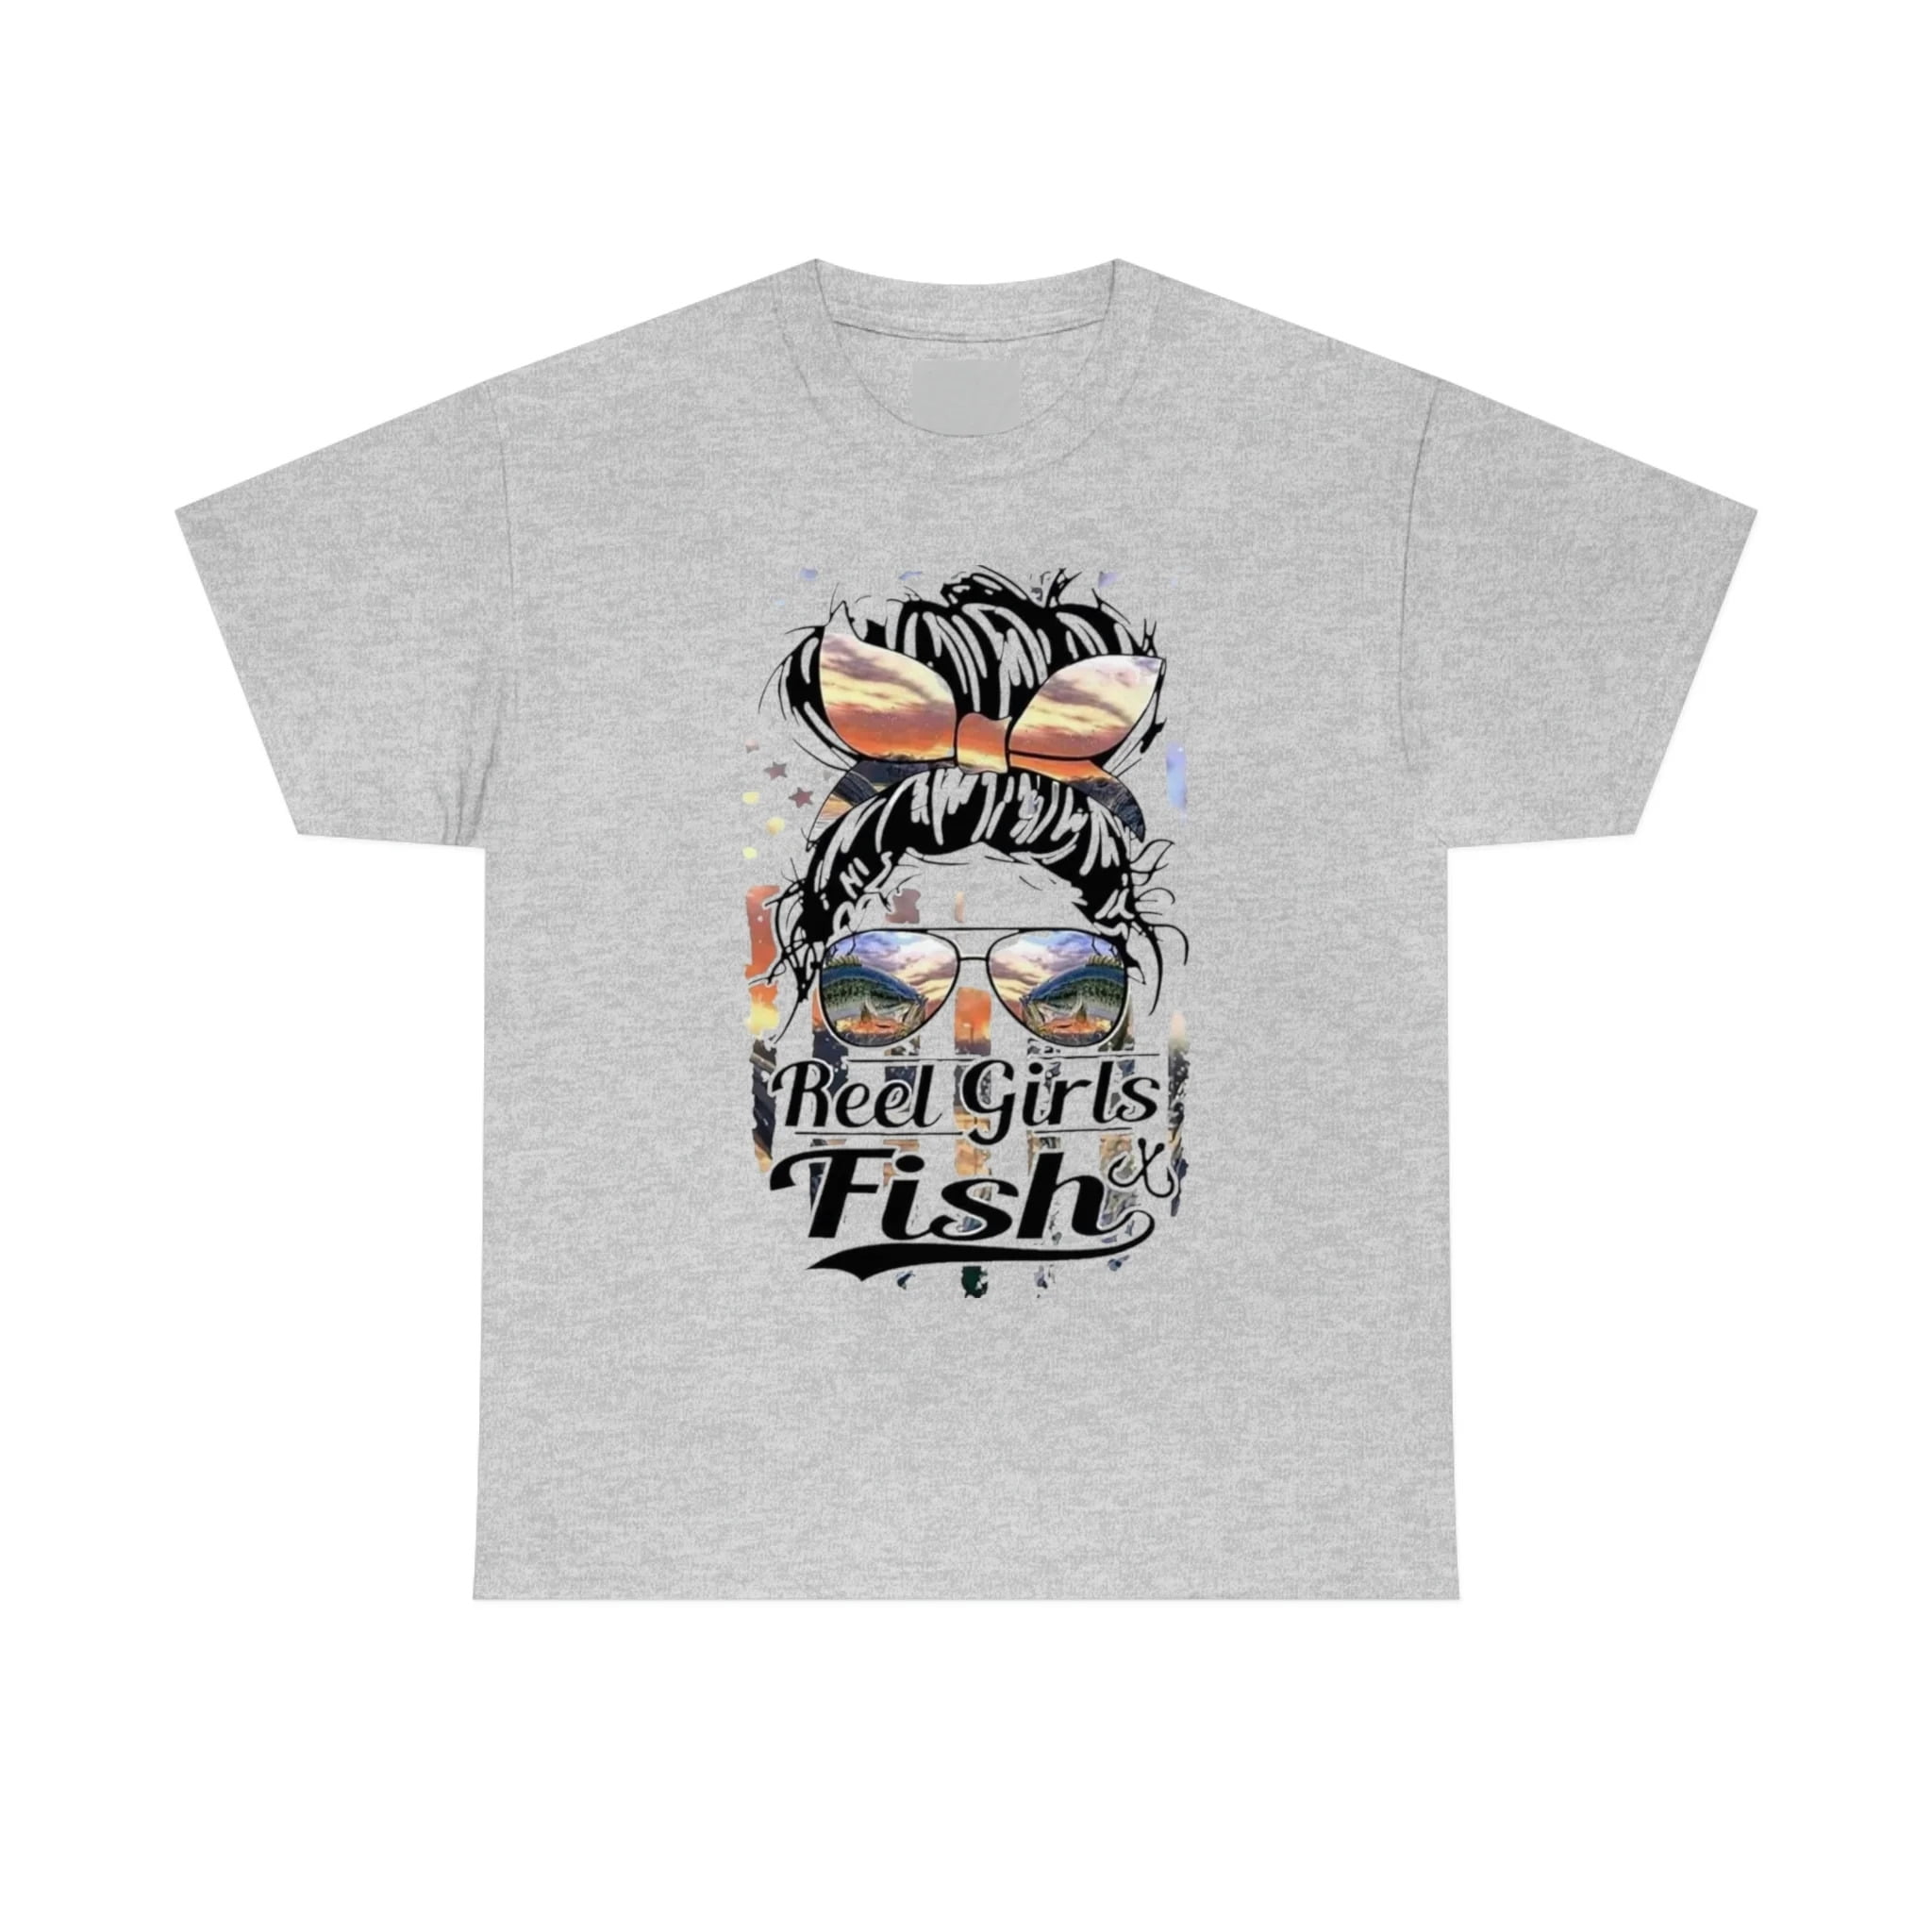 Reel Girls Fish, Fishing Tshirt, Country Tshirt, Woman Shirt